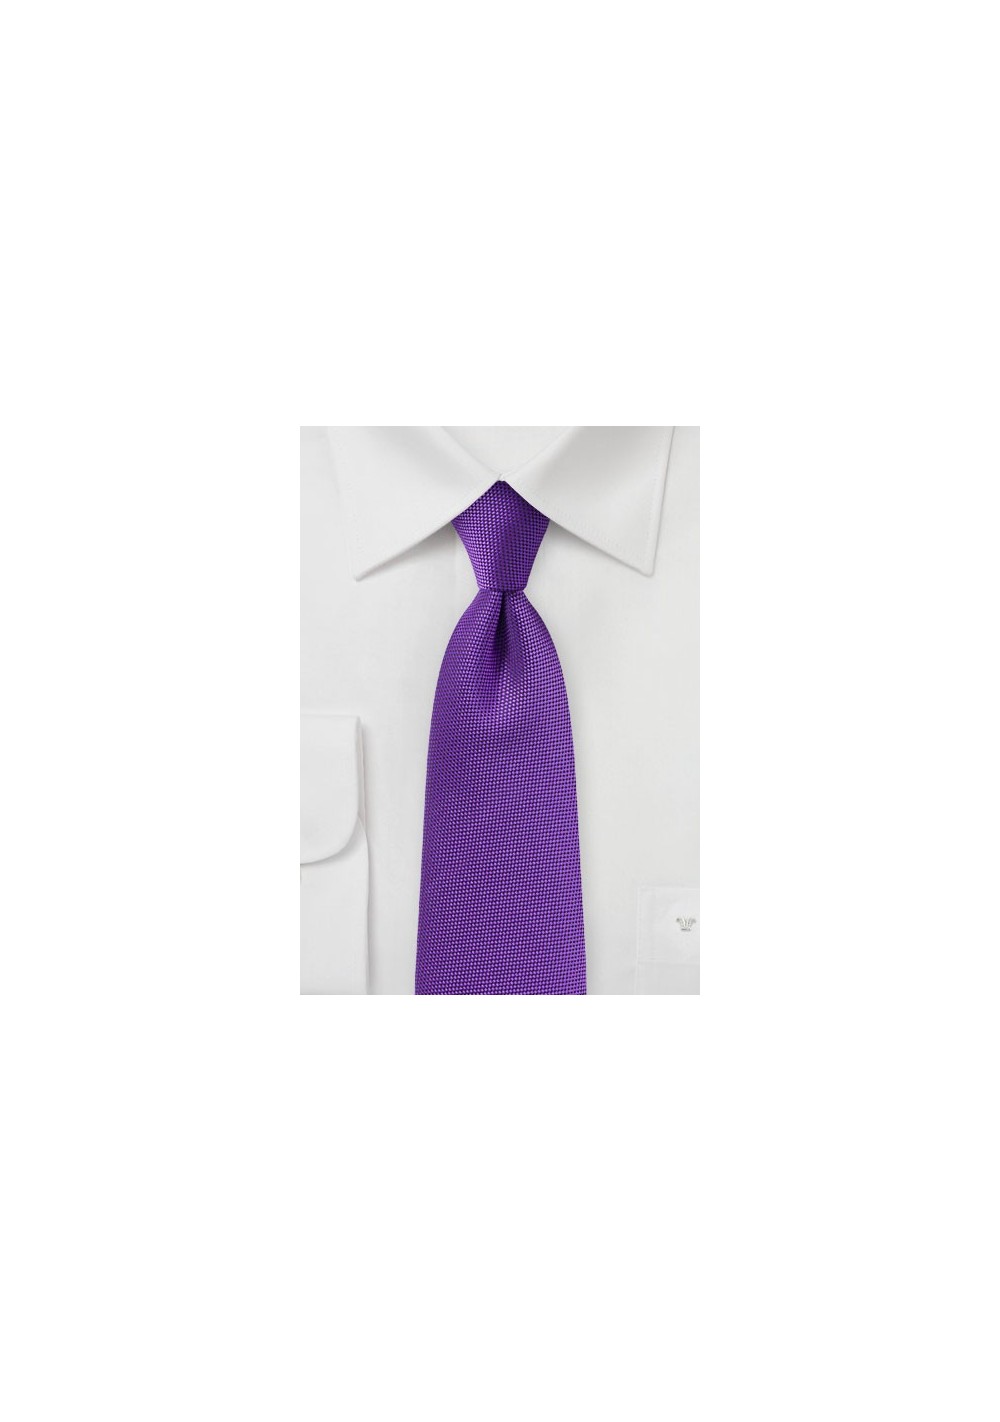 Rich Violet Purple Textured Tie